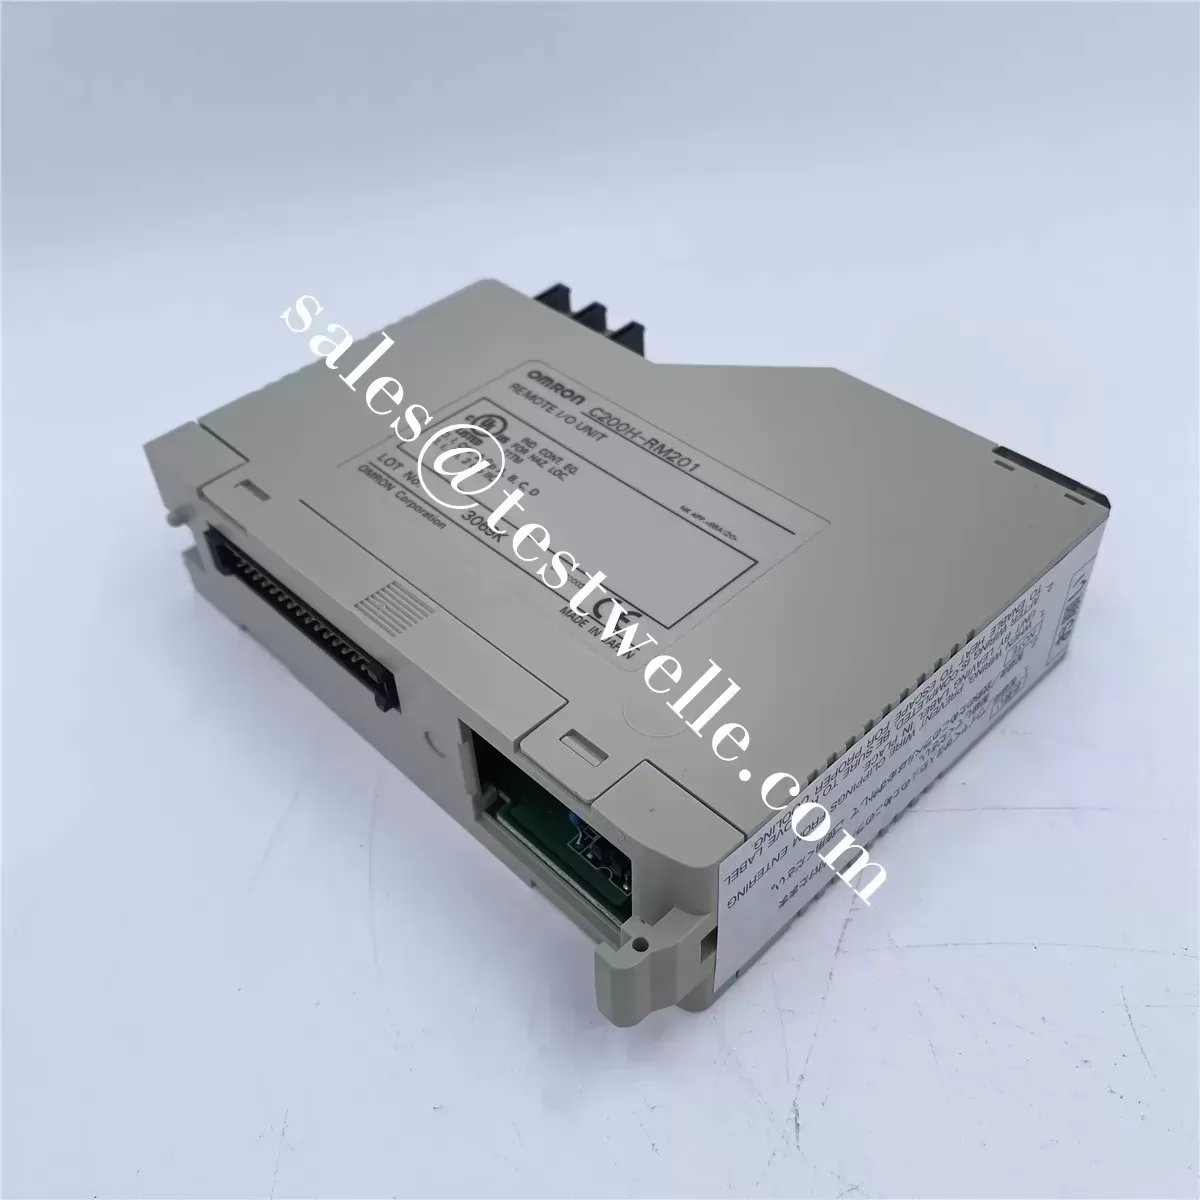 OMRON cheap PLC controller CS1G020